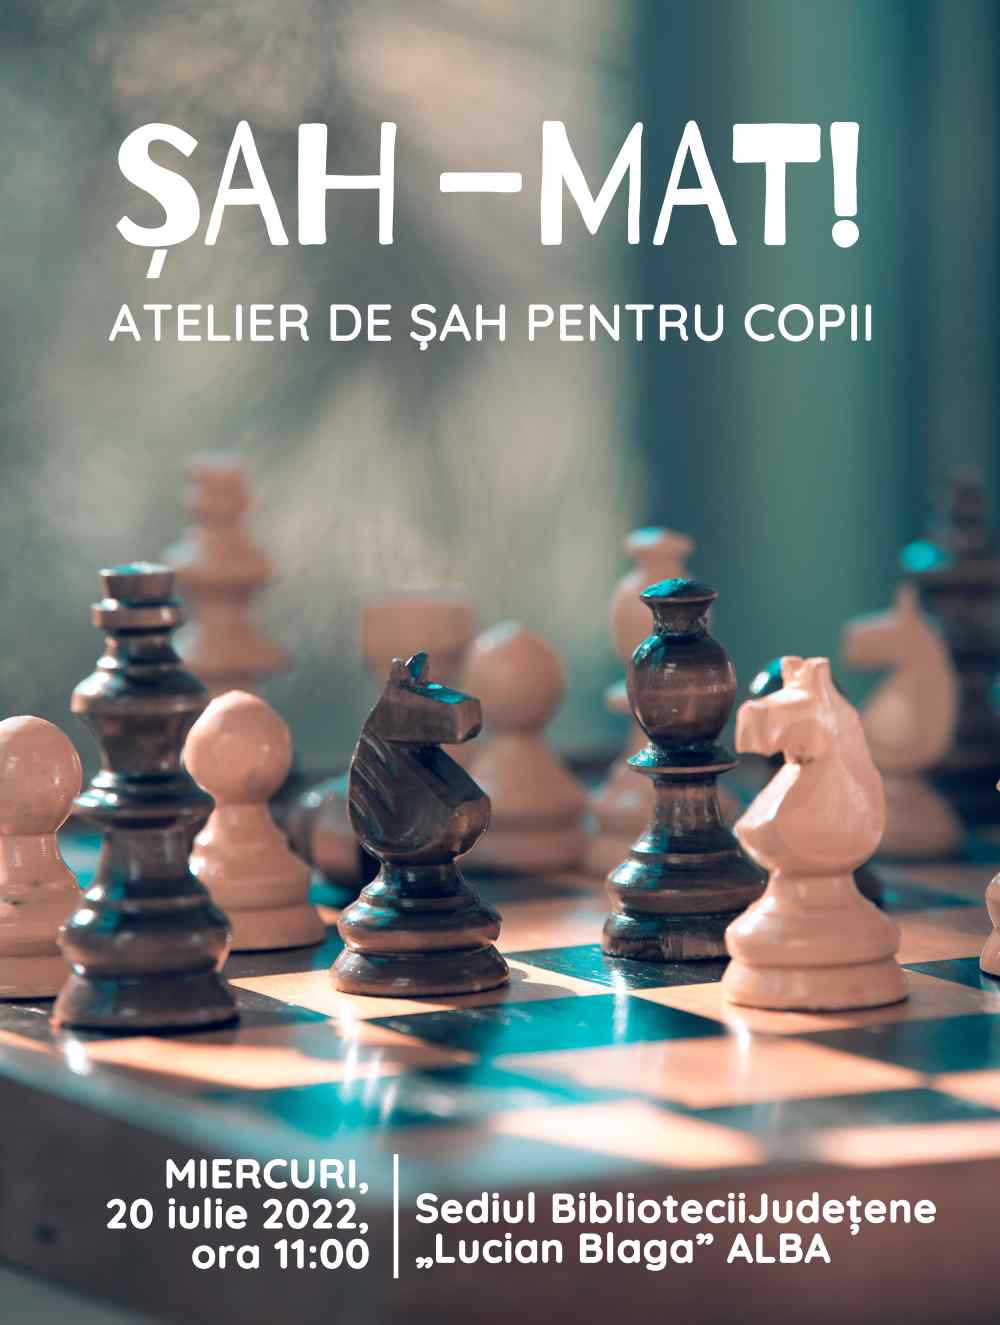 Șah-mat! - lucian blaga alba  „Șah-mat!”, mâine, de Ziua Mondială a Șahului, la Biblioteca Județeană „Lucian Blaga” Alba Sah mat lucian blaga alba